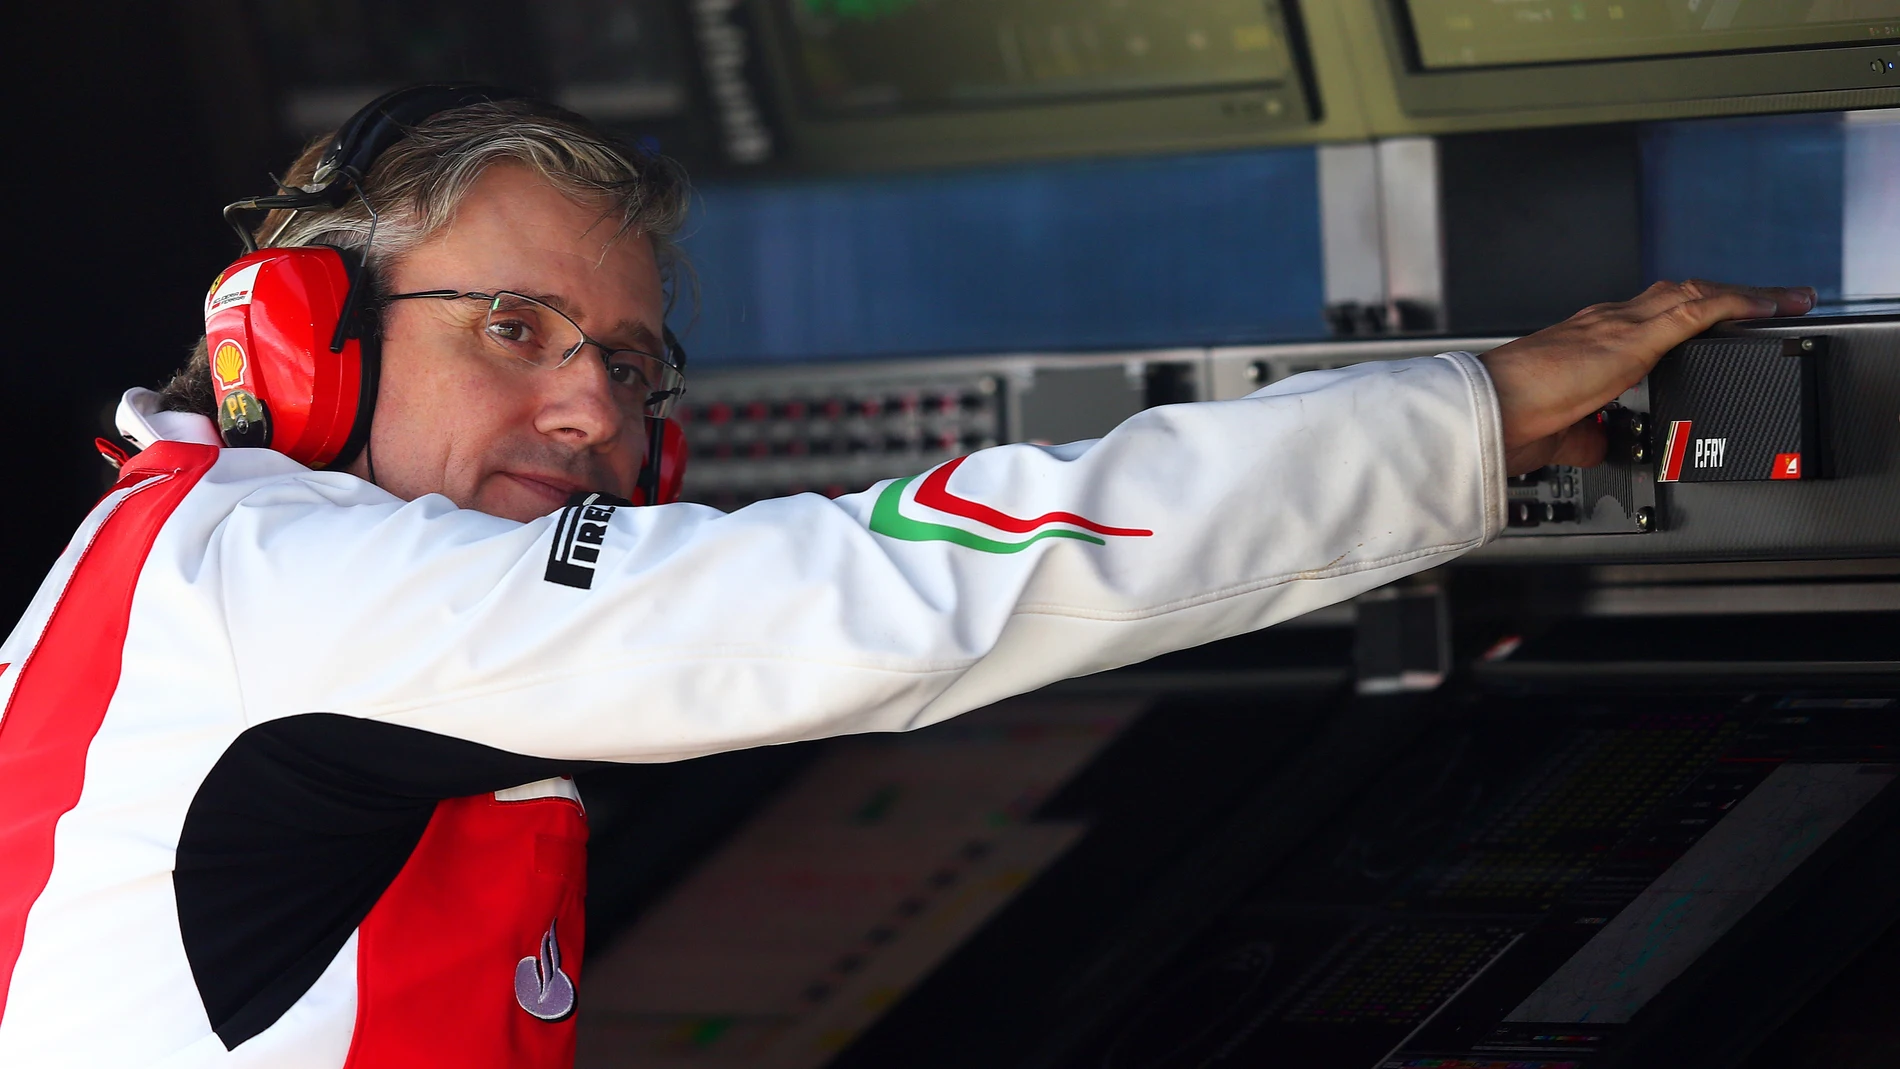 Pat Fry, Director de Ingeniería de Ferrari